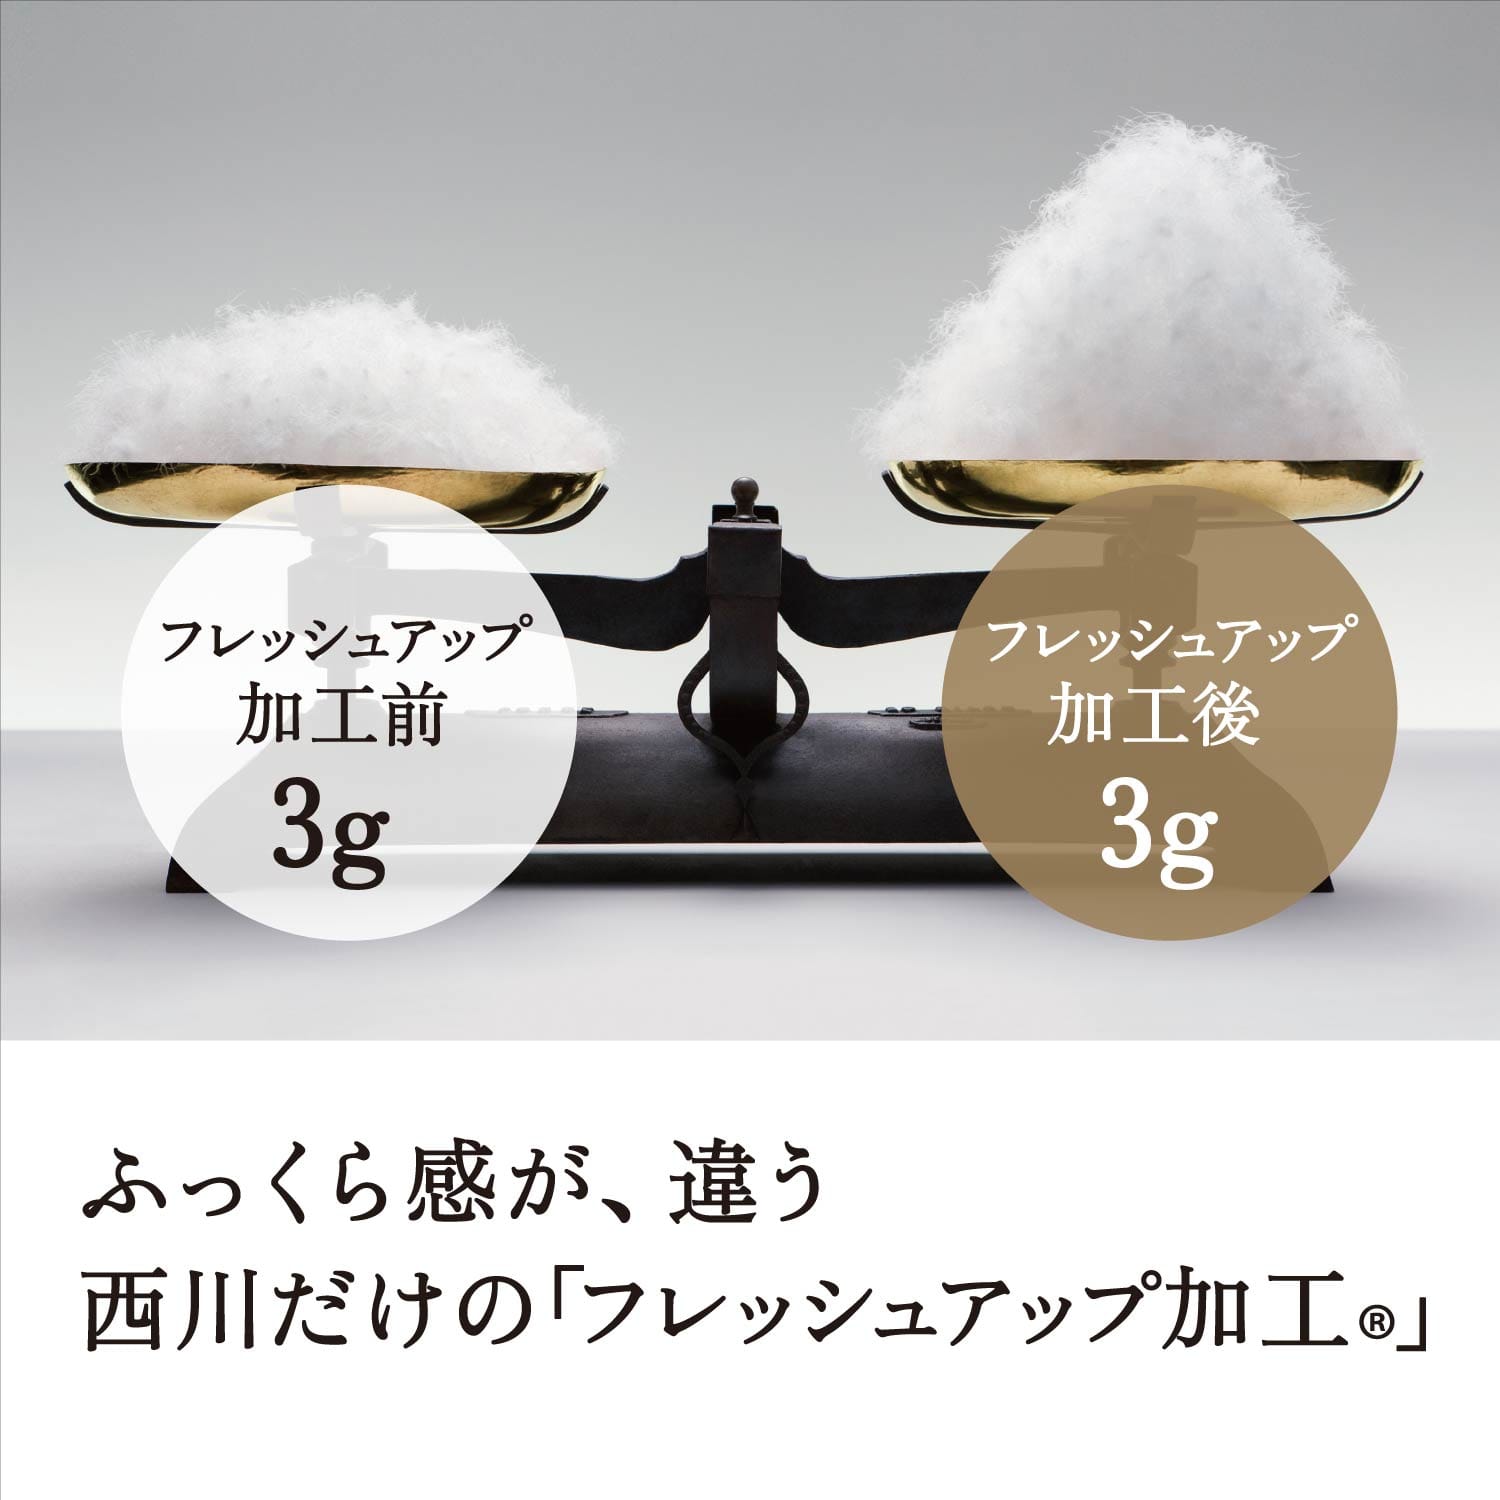 大特価❣️グース羽毛布団❣️D Lサイズ・日本製❣️ダウン90%・1.7kg